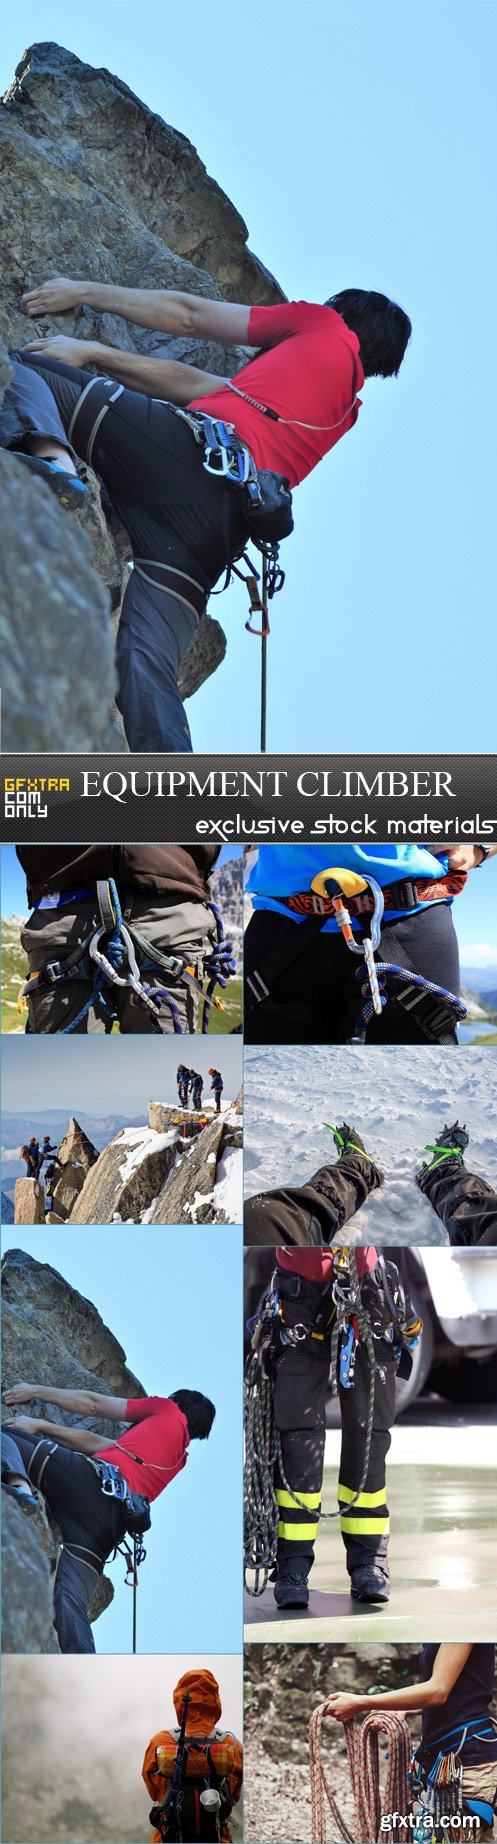 Equipment climber - 8 JPEG